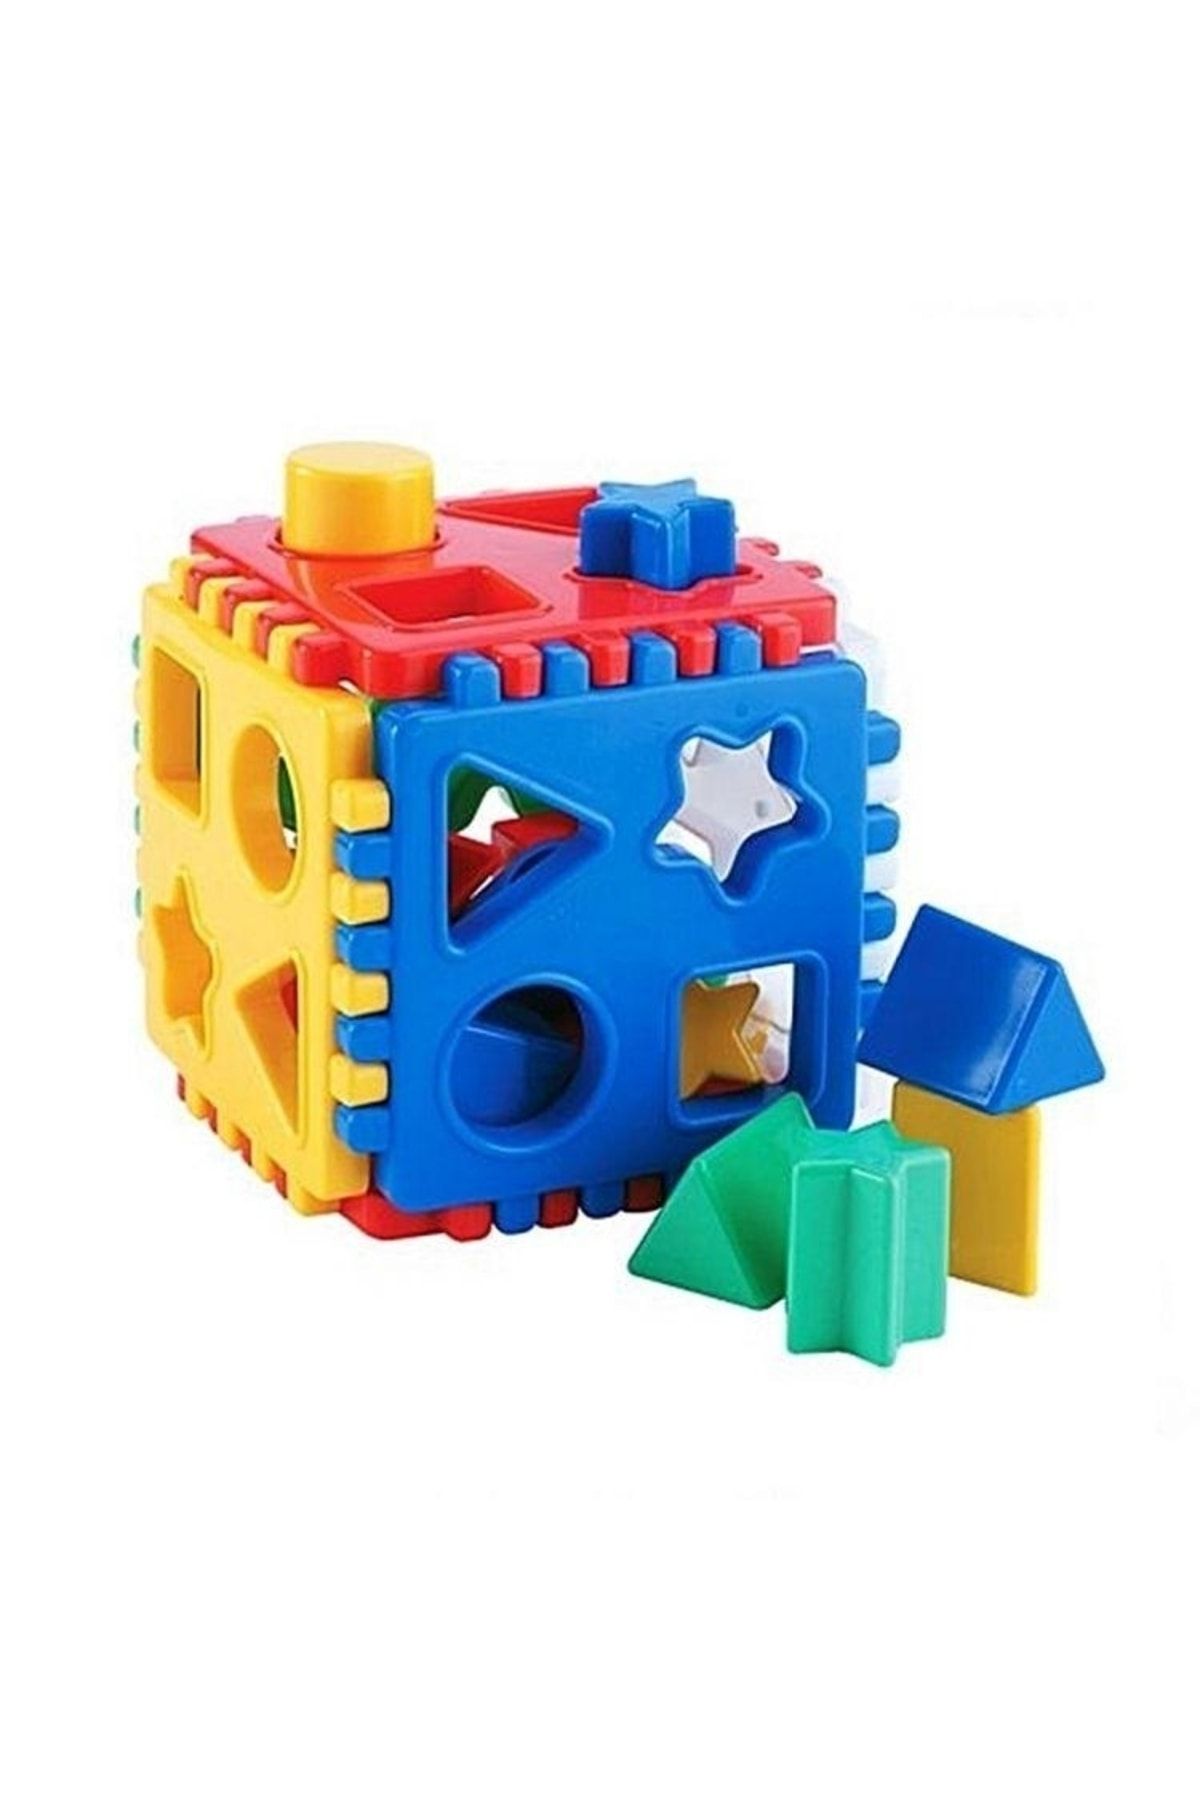 DEDE Kaliteli* Bebekler Çocuklar Için Eğitici Bultak Küp Puzzle 22 Parça - Motor Becerileri Geliştirici